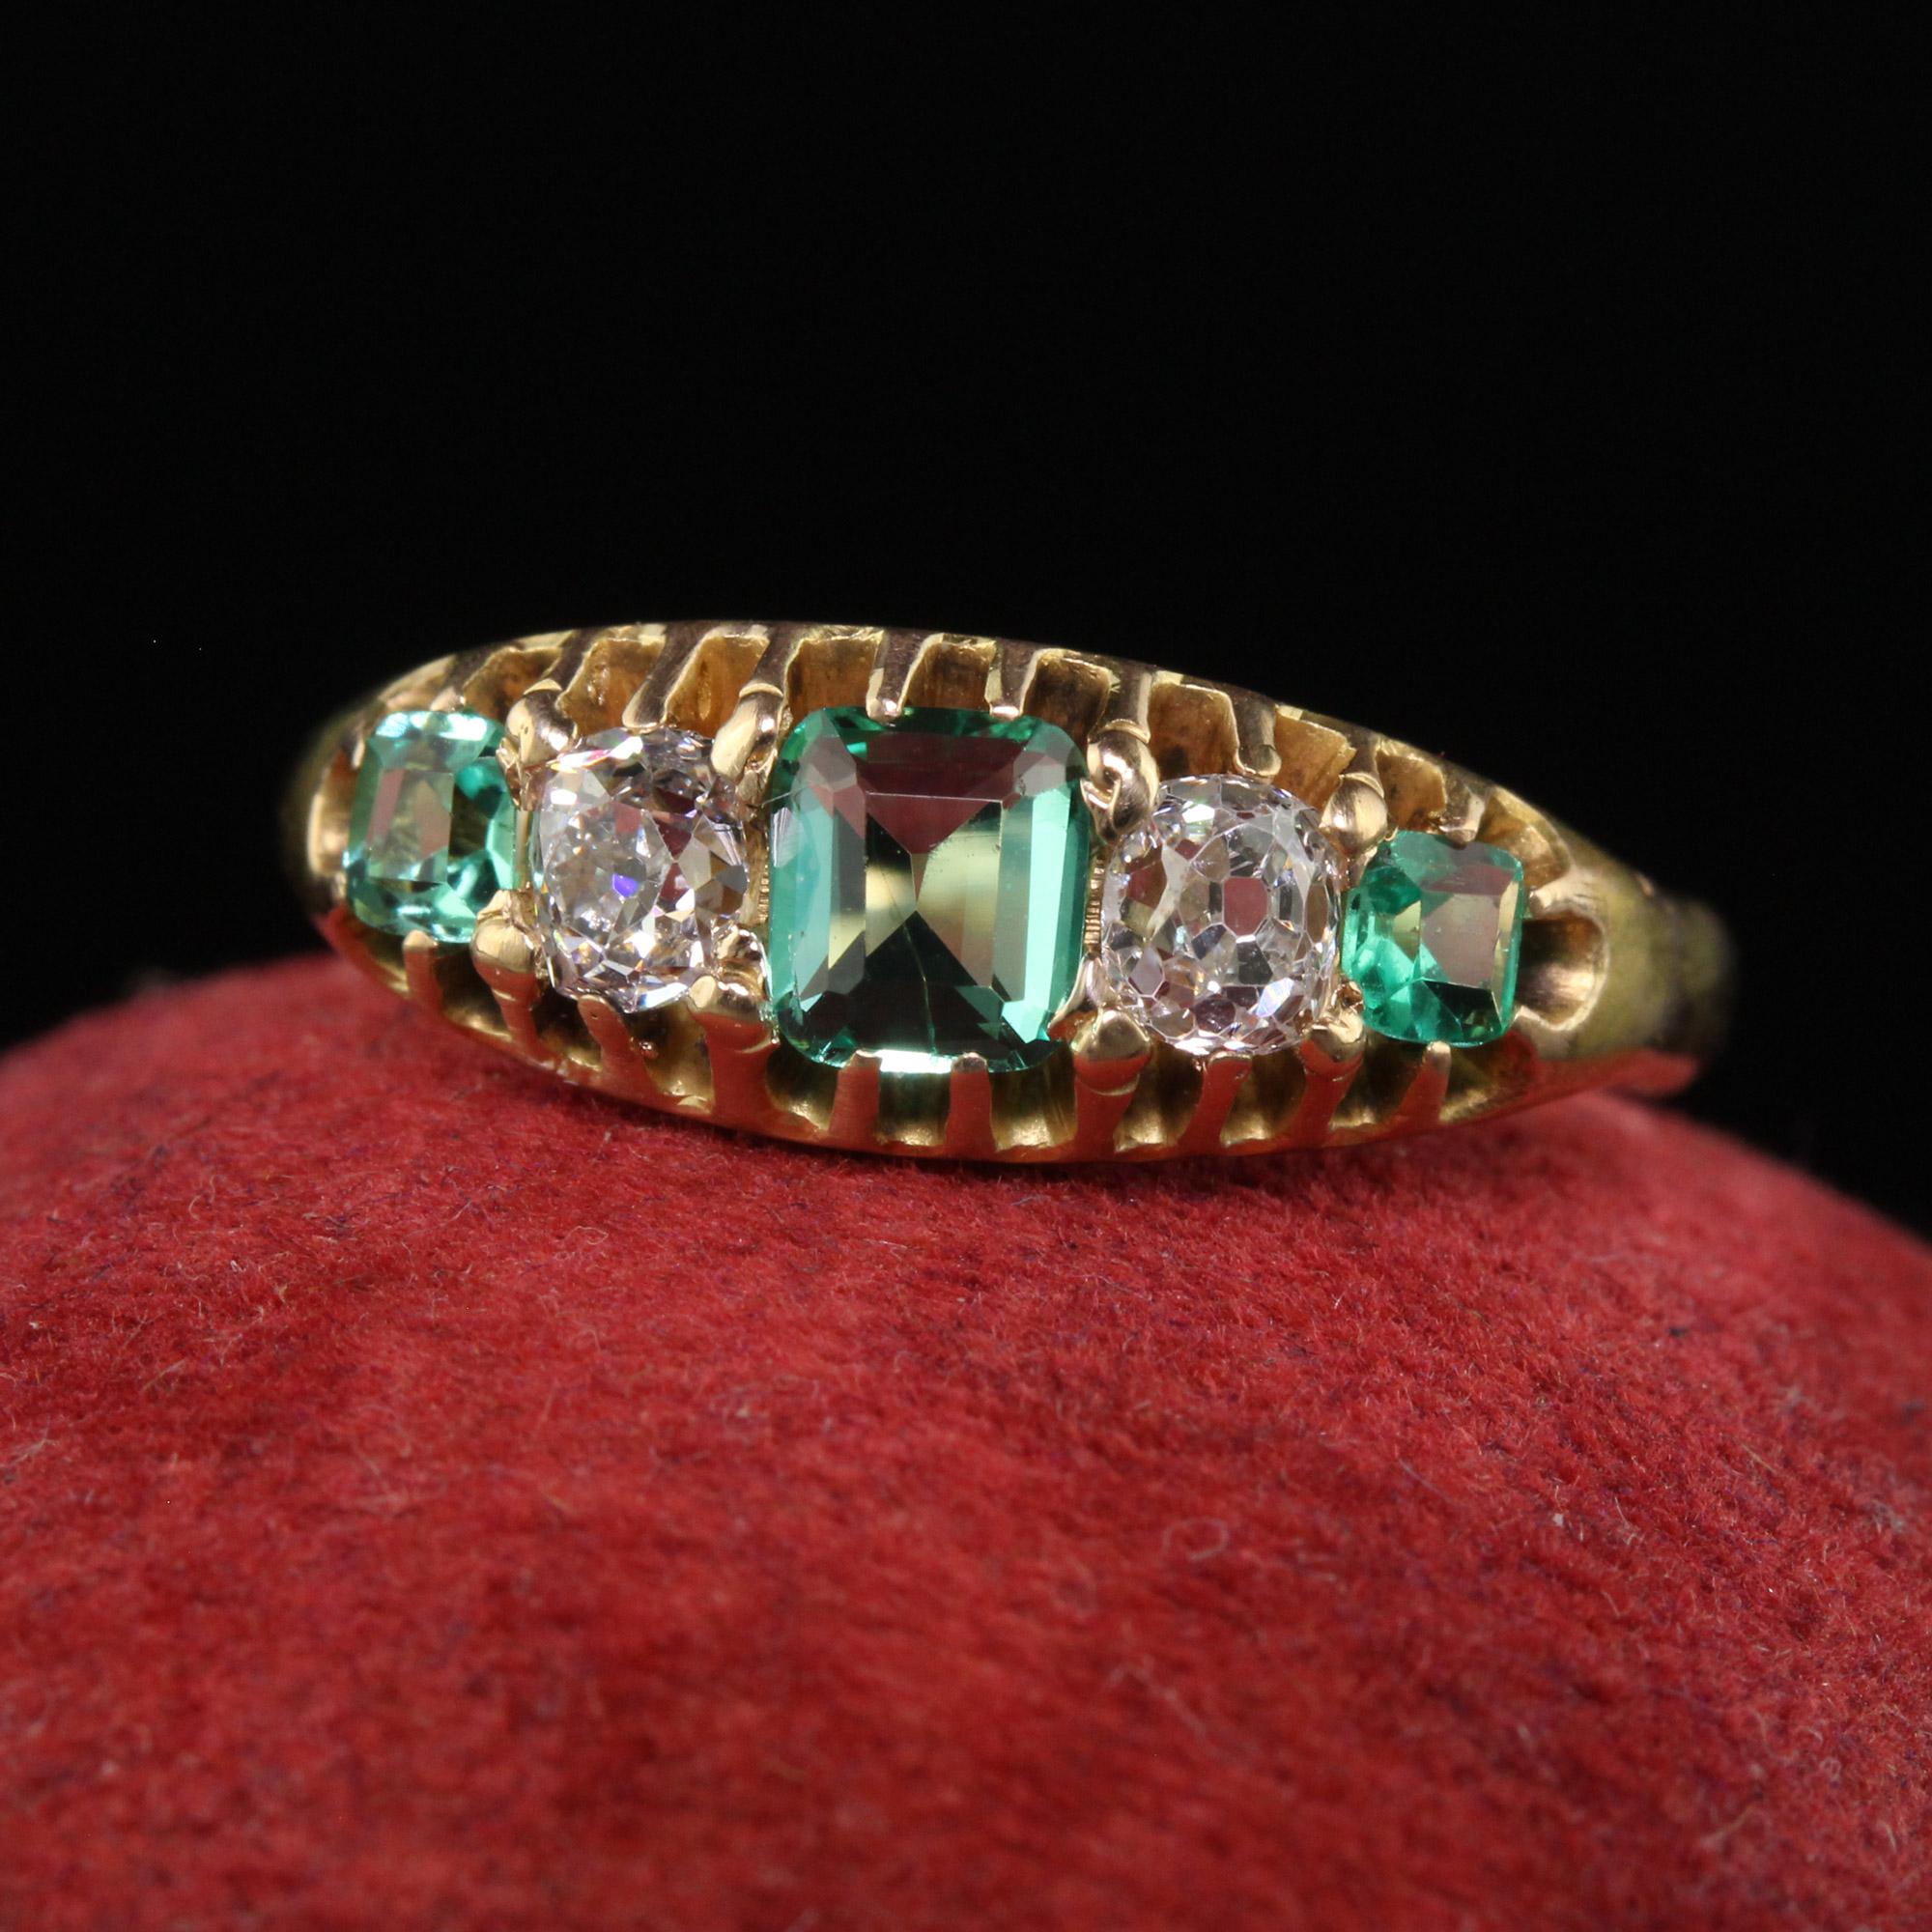 Schöne antike viktorianische 14K Gelbgold Old Mine Diamant und Smaragd Fünf Stein Ring. Dieser wunderschöne viktorianische Ring mit Diamanten und Smaragden aus alten Minen ist aus 14 Karat Gelbgold gefertigt. Auf der Oberseite des Rings befinden